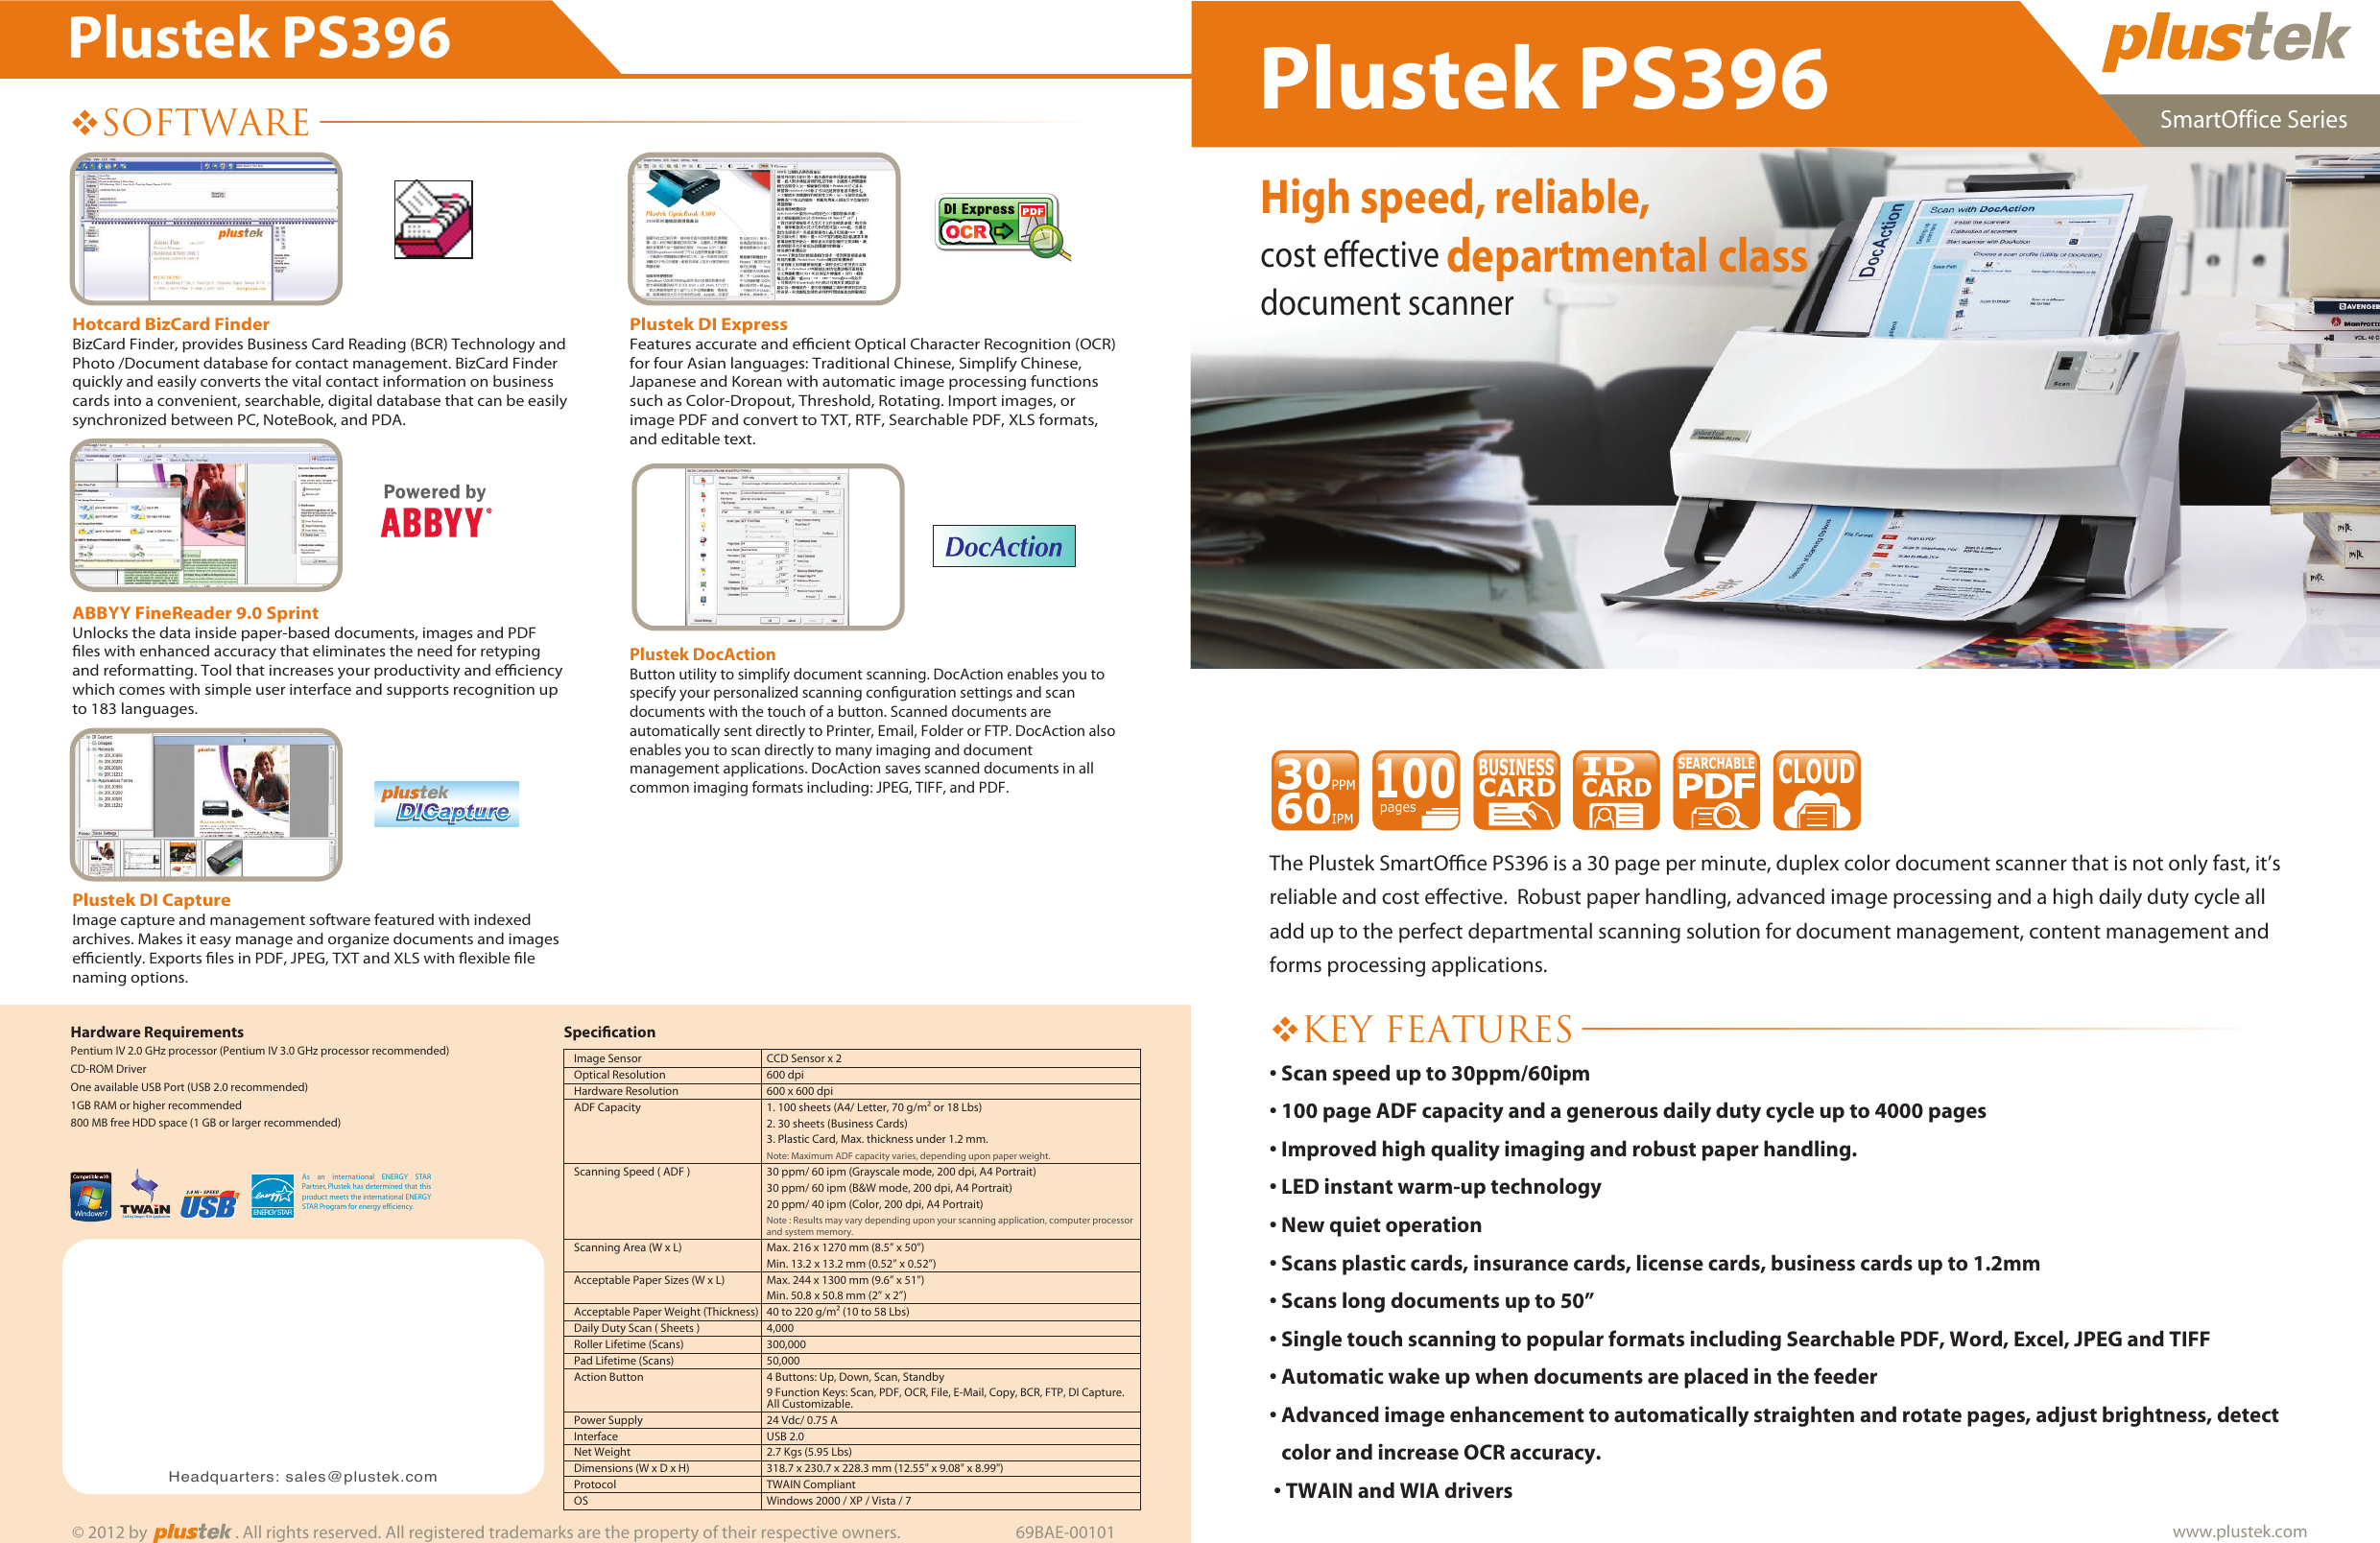 Page 1 of 2 - Plustek Plustek-Copier-Smartoffice-Users-Manual- 69BAE-00101-front  Plustek-copier-smartoffice-users-manual